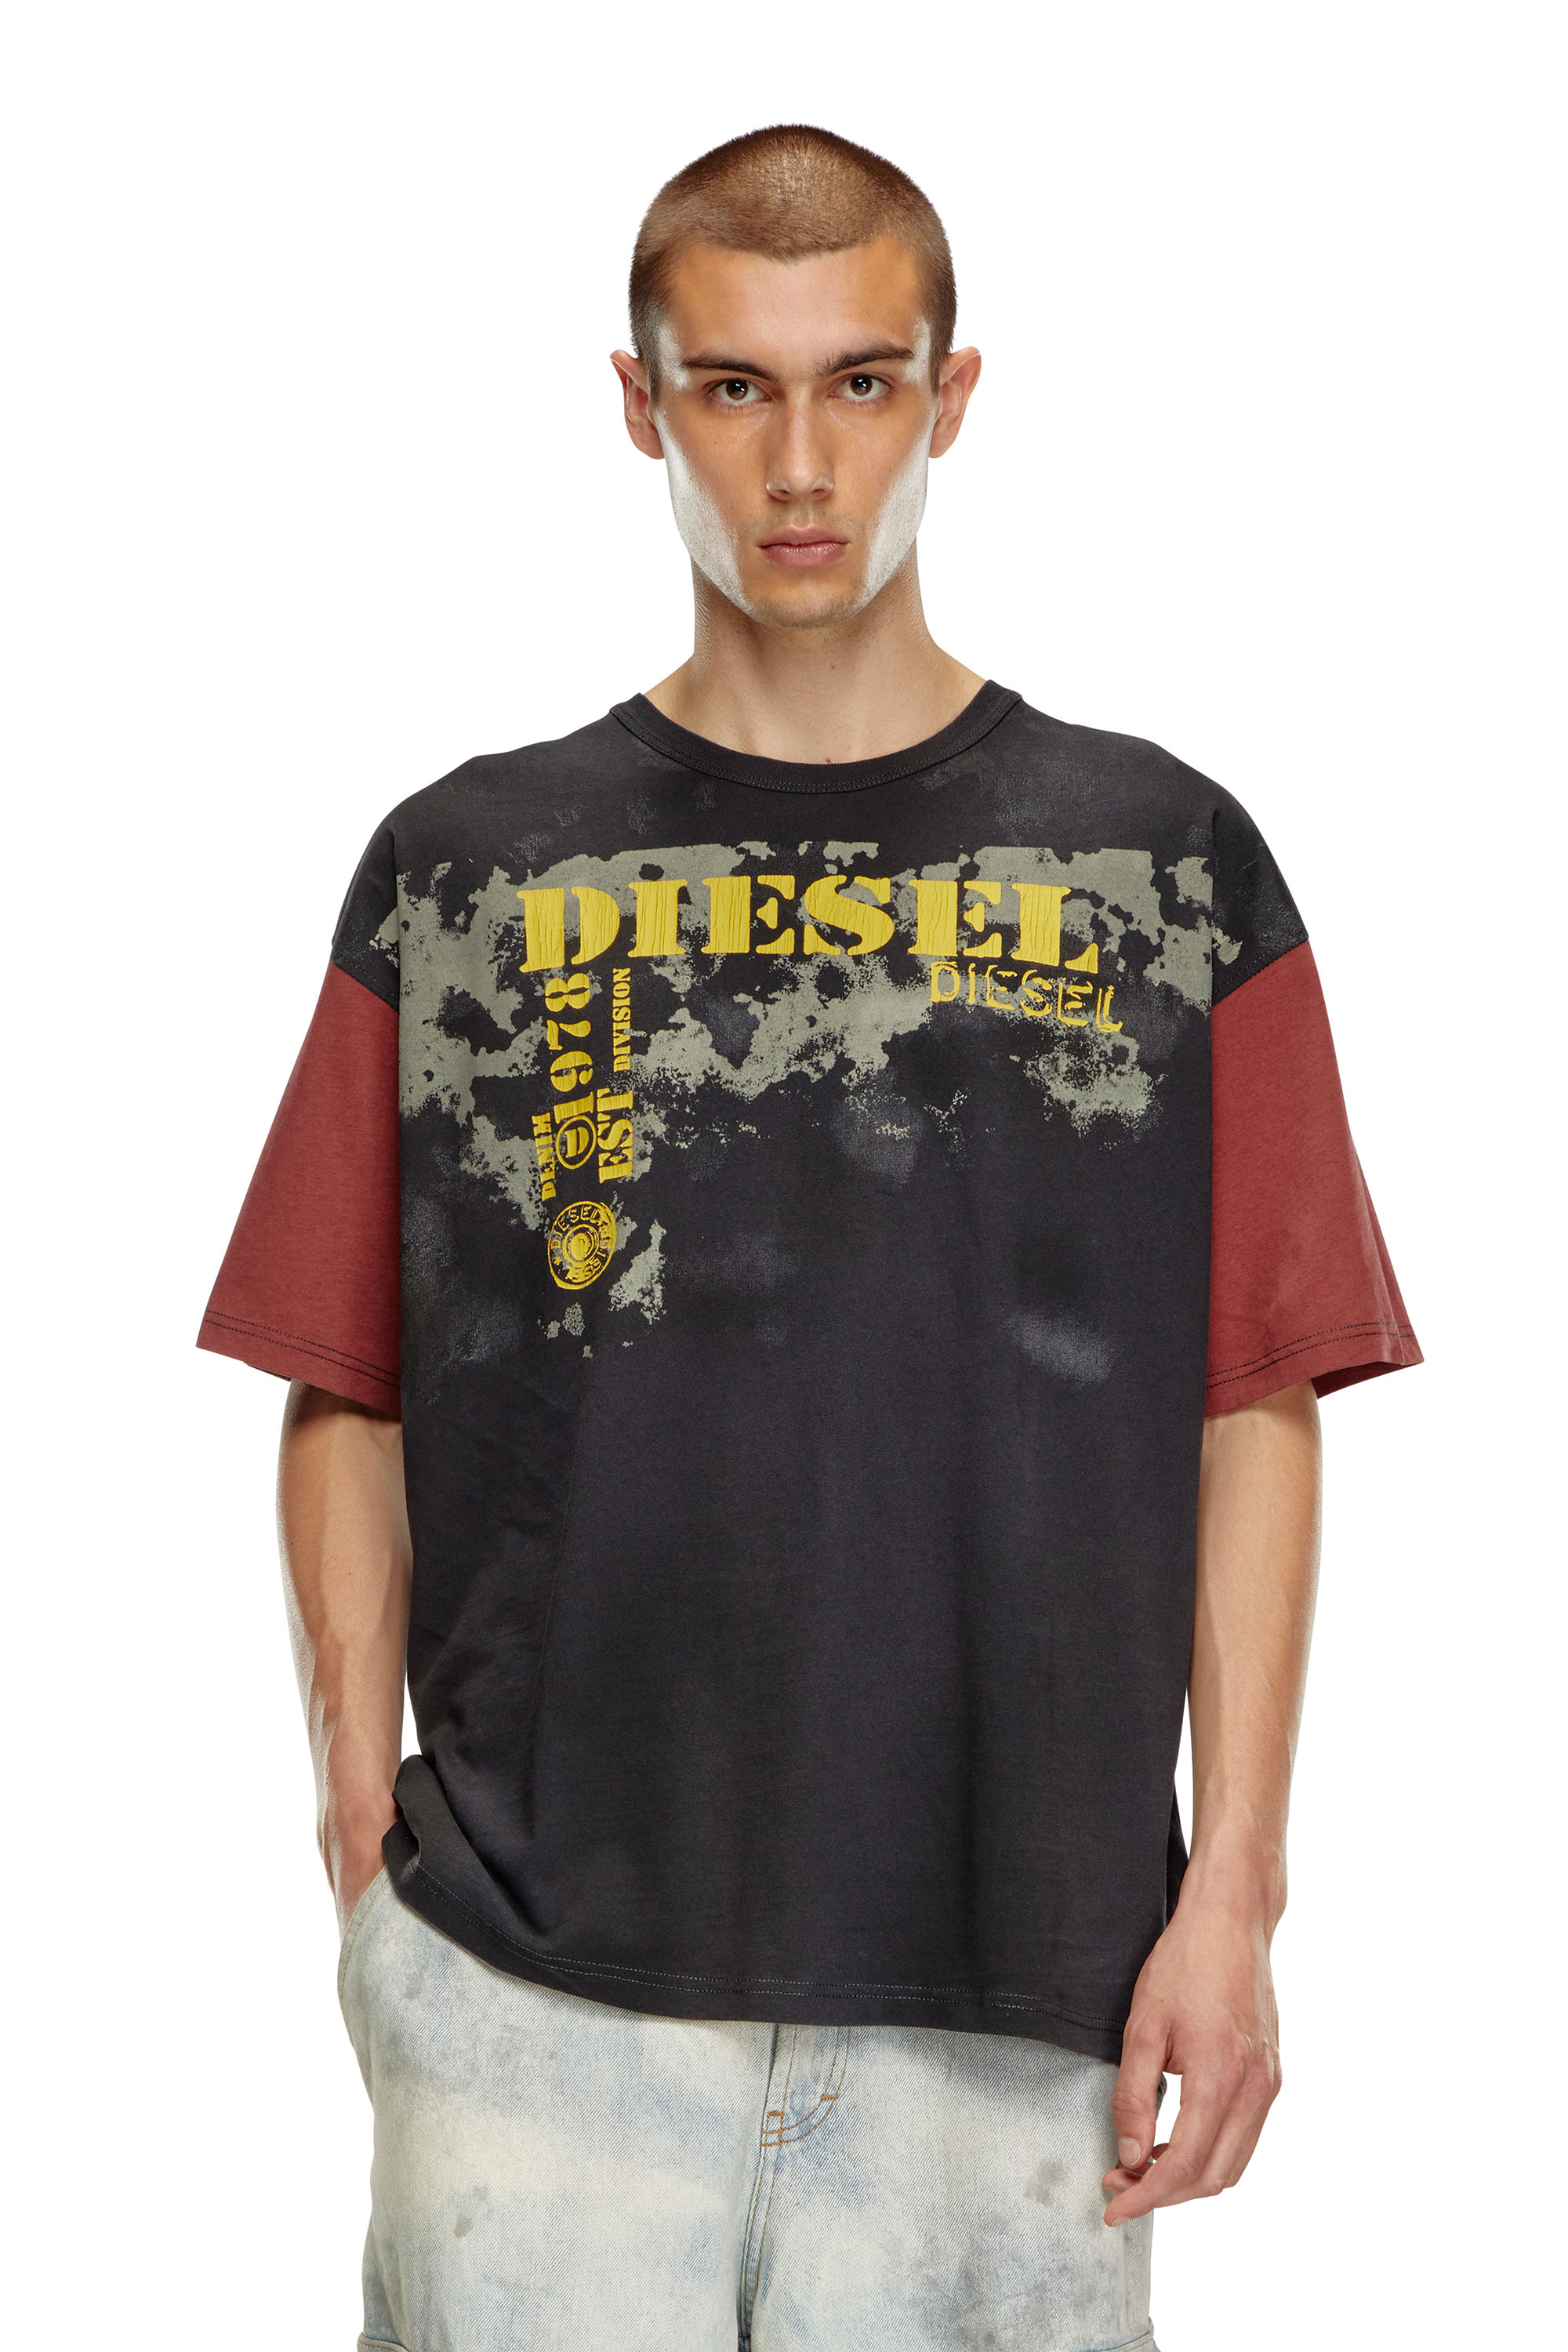 Diesel - T-BOXT-Q4, Hombre Camiseta en bloques de color con efectos de suciedad in Multicolor - Image 1